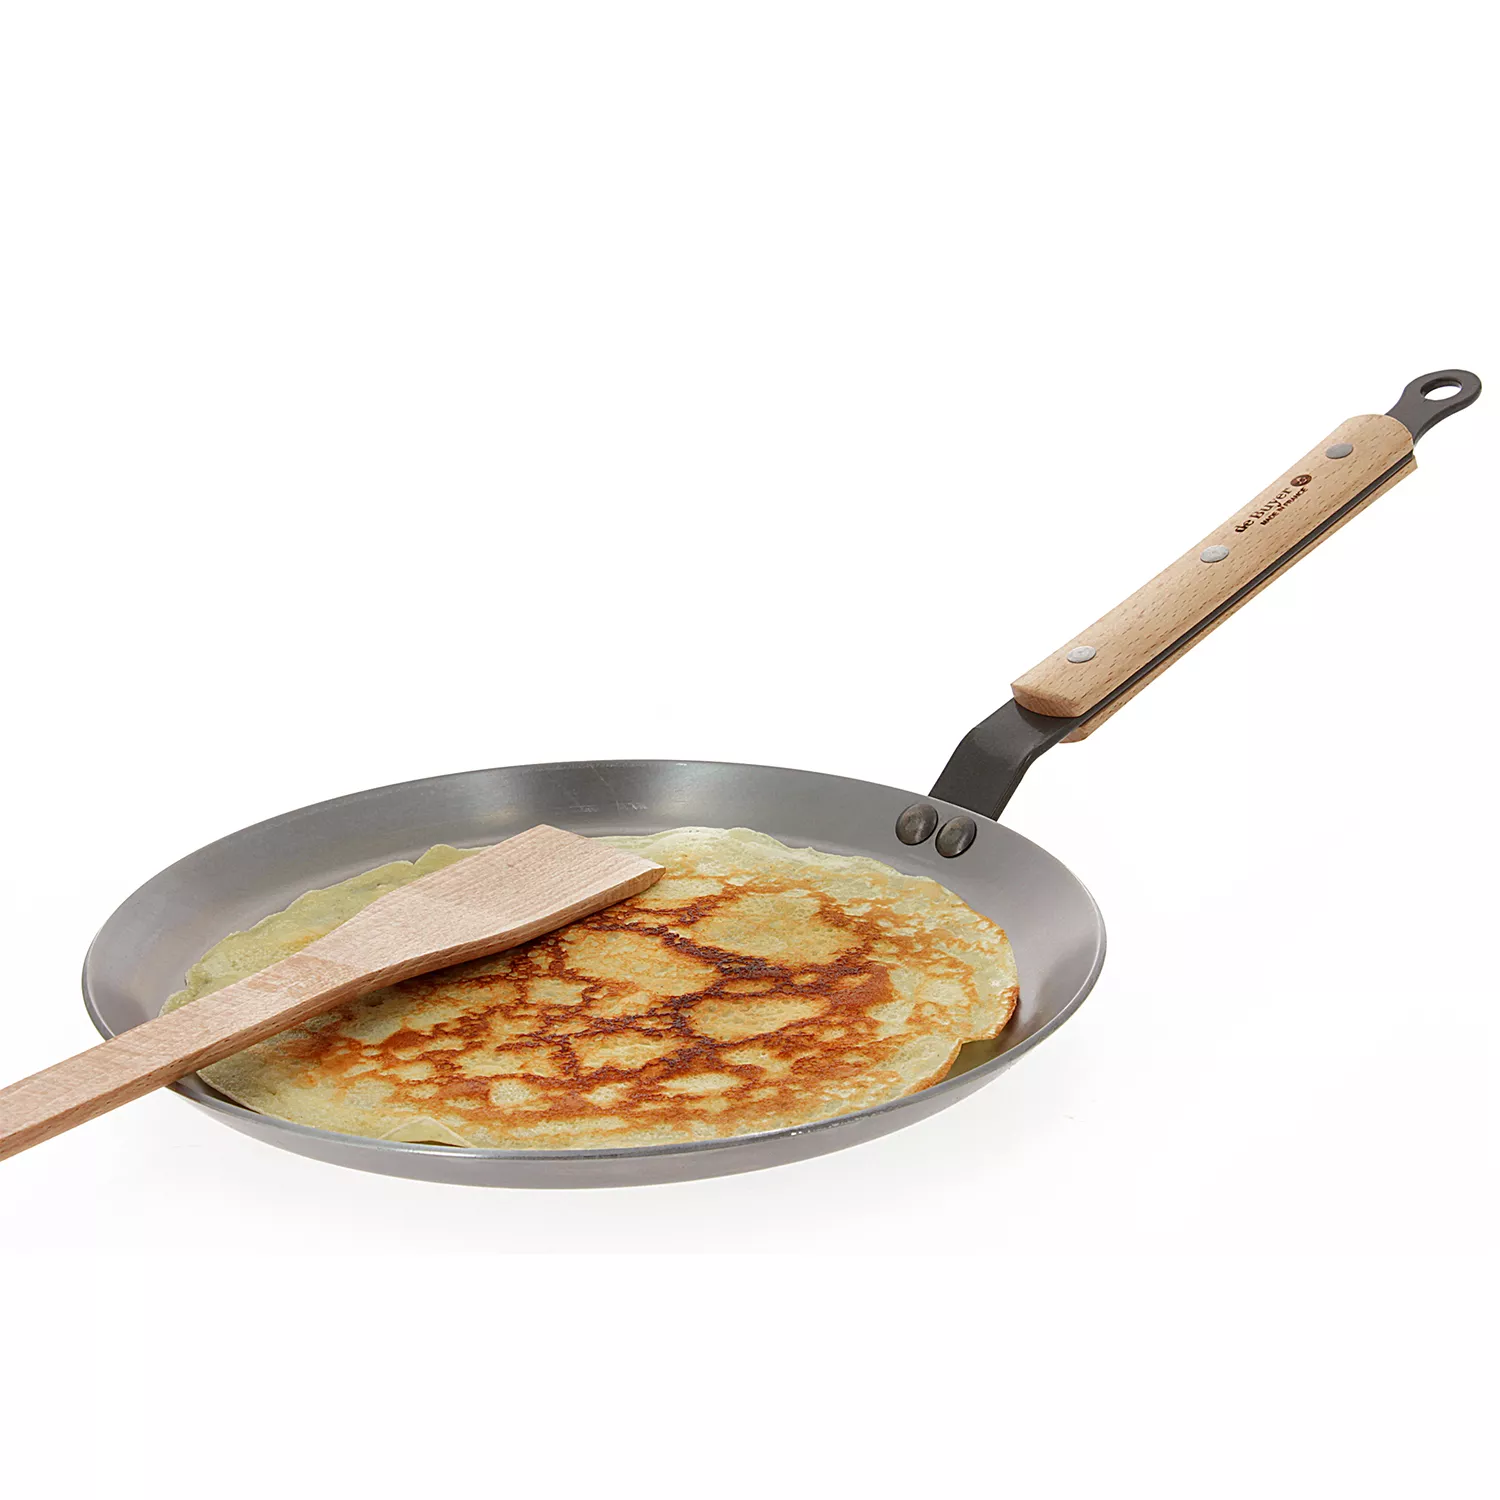 MINERAL B PRO Fry Pan Value Set 2 Pieces – de Buyer